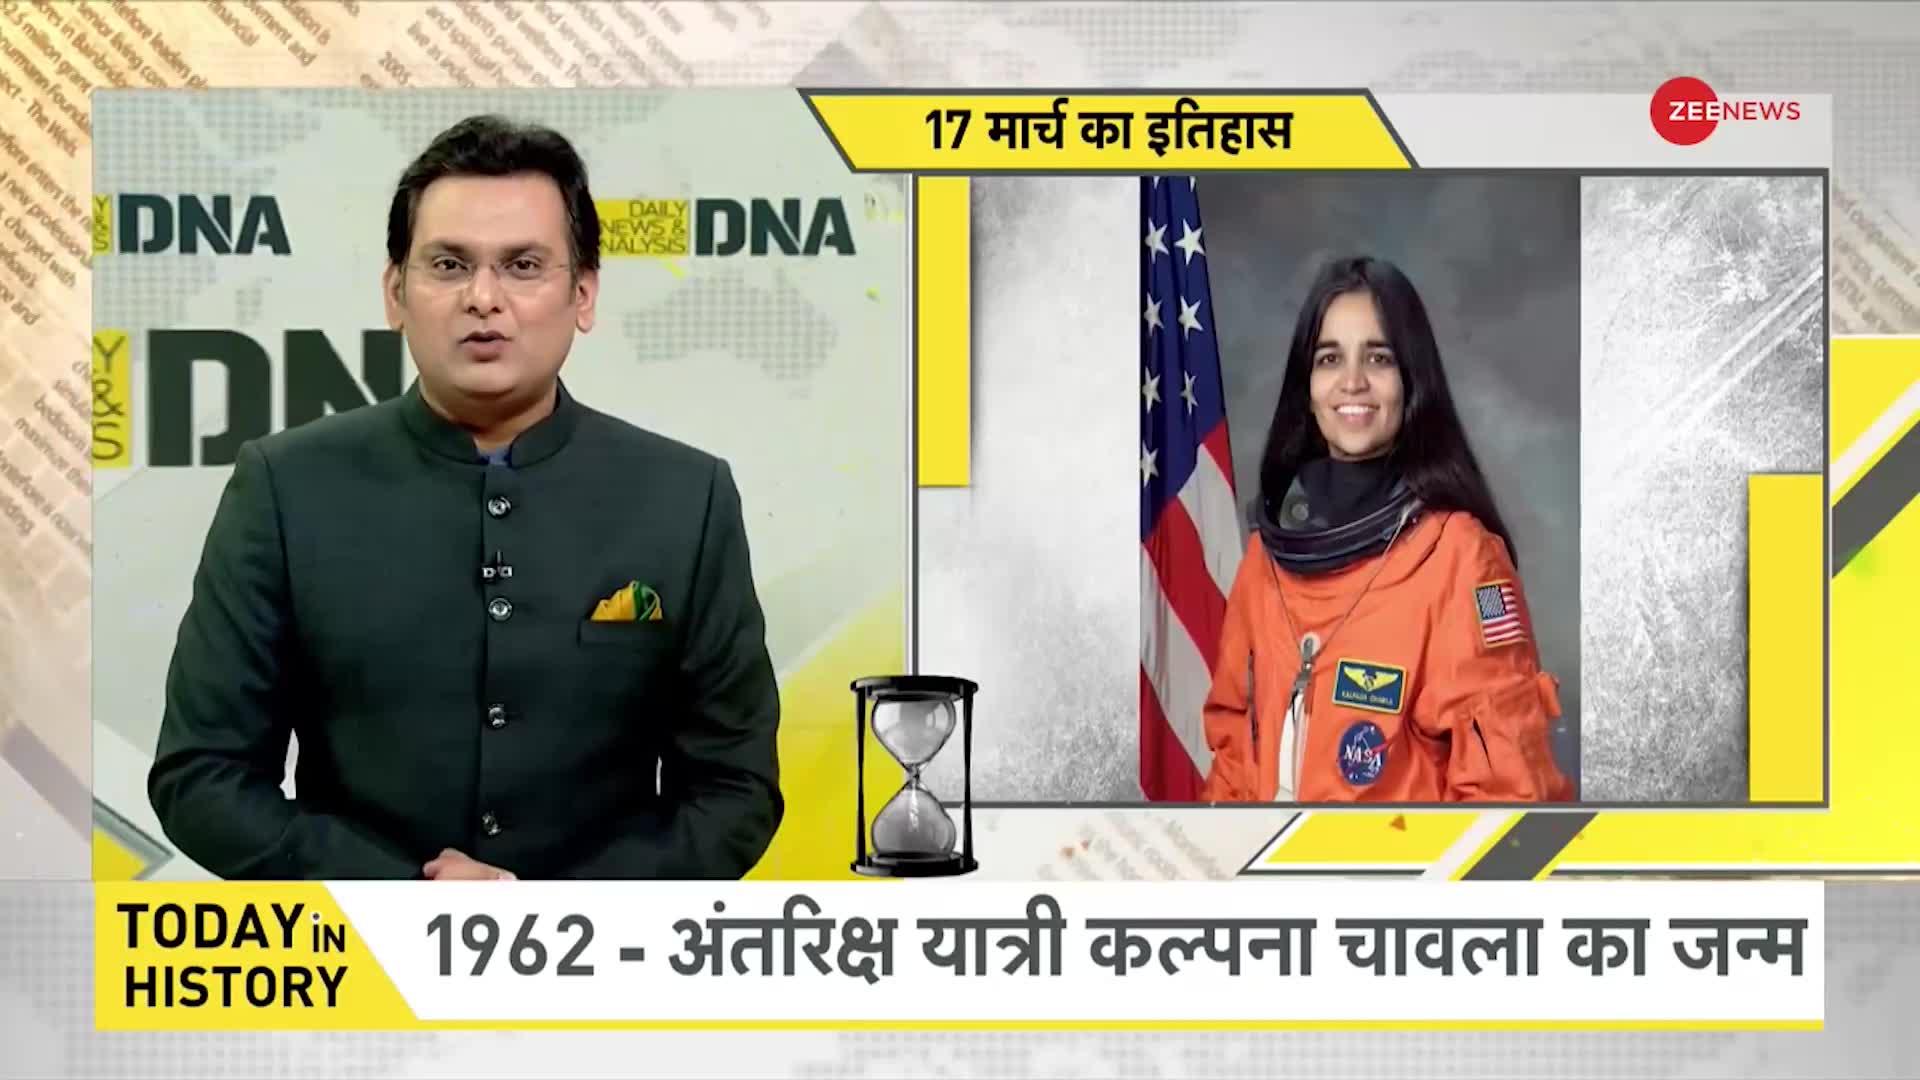 DNA: जब 1990 में बैडमिंटन खिलाड़ी साइना नेहवाल का जन्म हुआ था